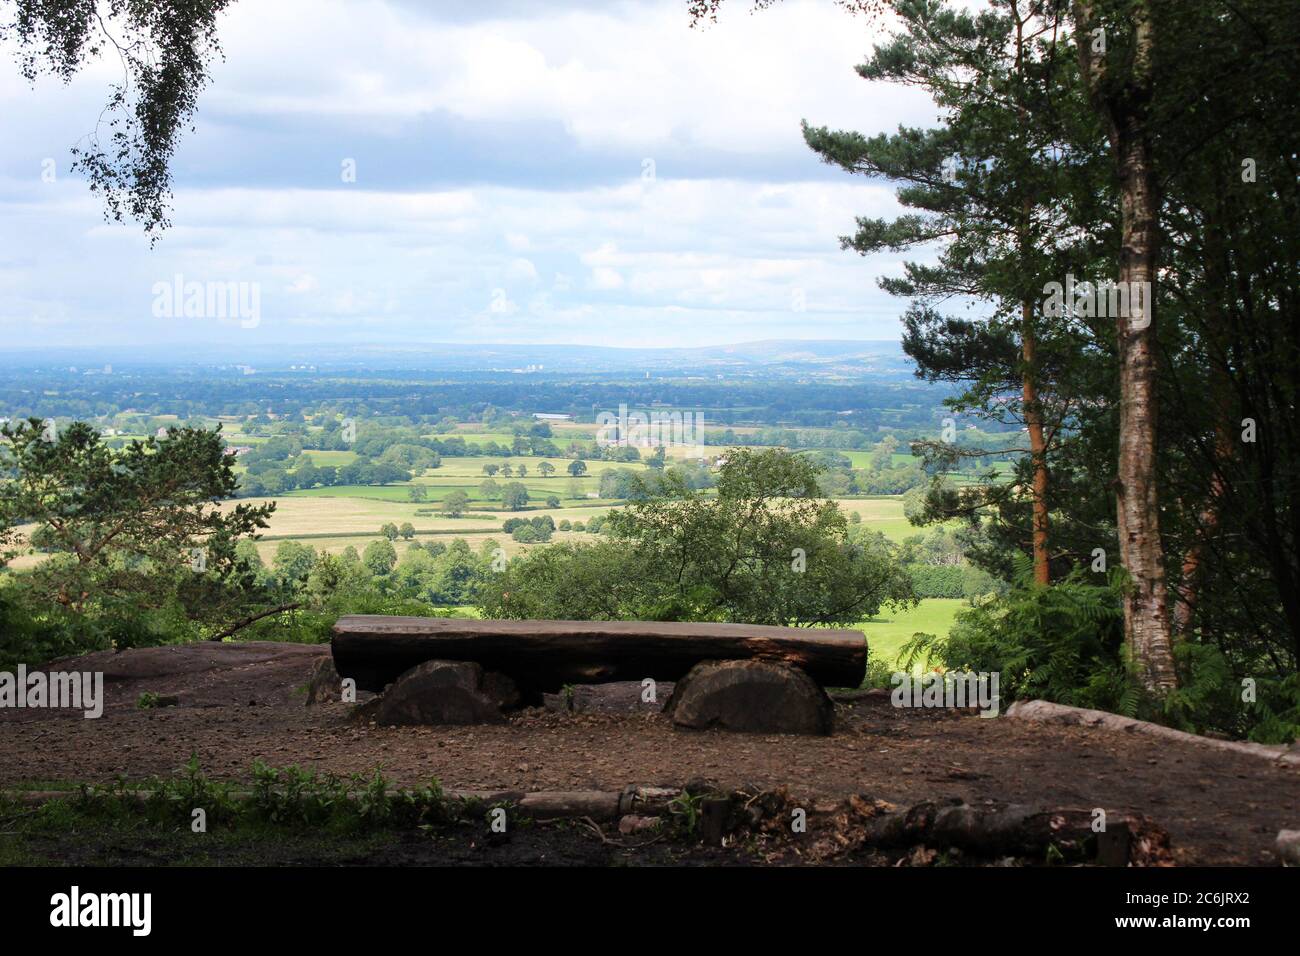 Blick auf Cheshire von der Stormy Point Gegend, inklusive einer Holzbank und Bäumen, am Alderley Edge in Cheshire, England Stockfoto